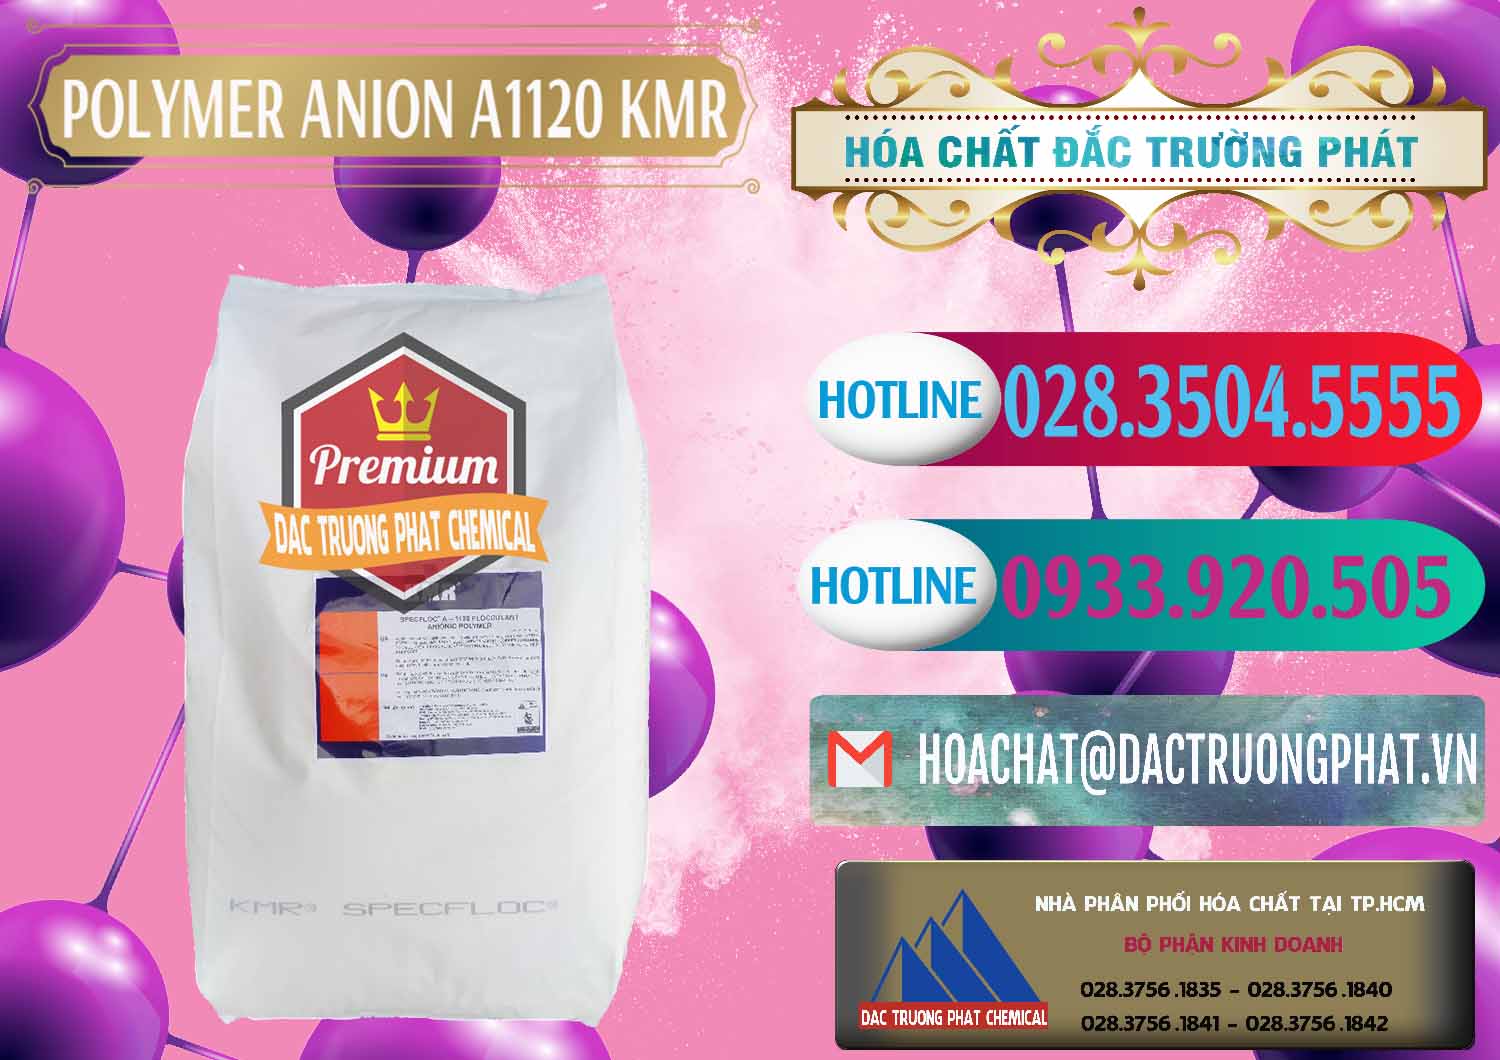 Đơn vị chuyên kinh doanh và bán Polymer Anion A1120 - KMR Anh Quốc England - 0119 - Cung cấp & kinh doanh hóa chất tại TP.HCM - truongphat.vn